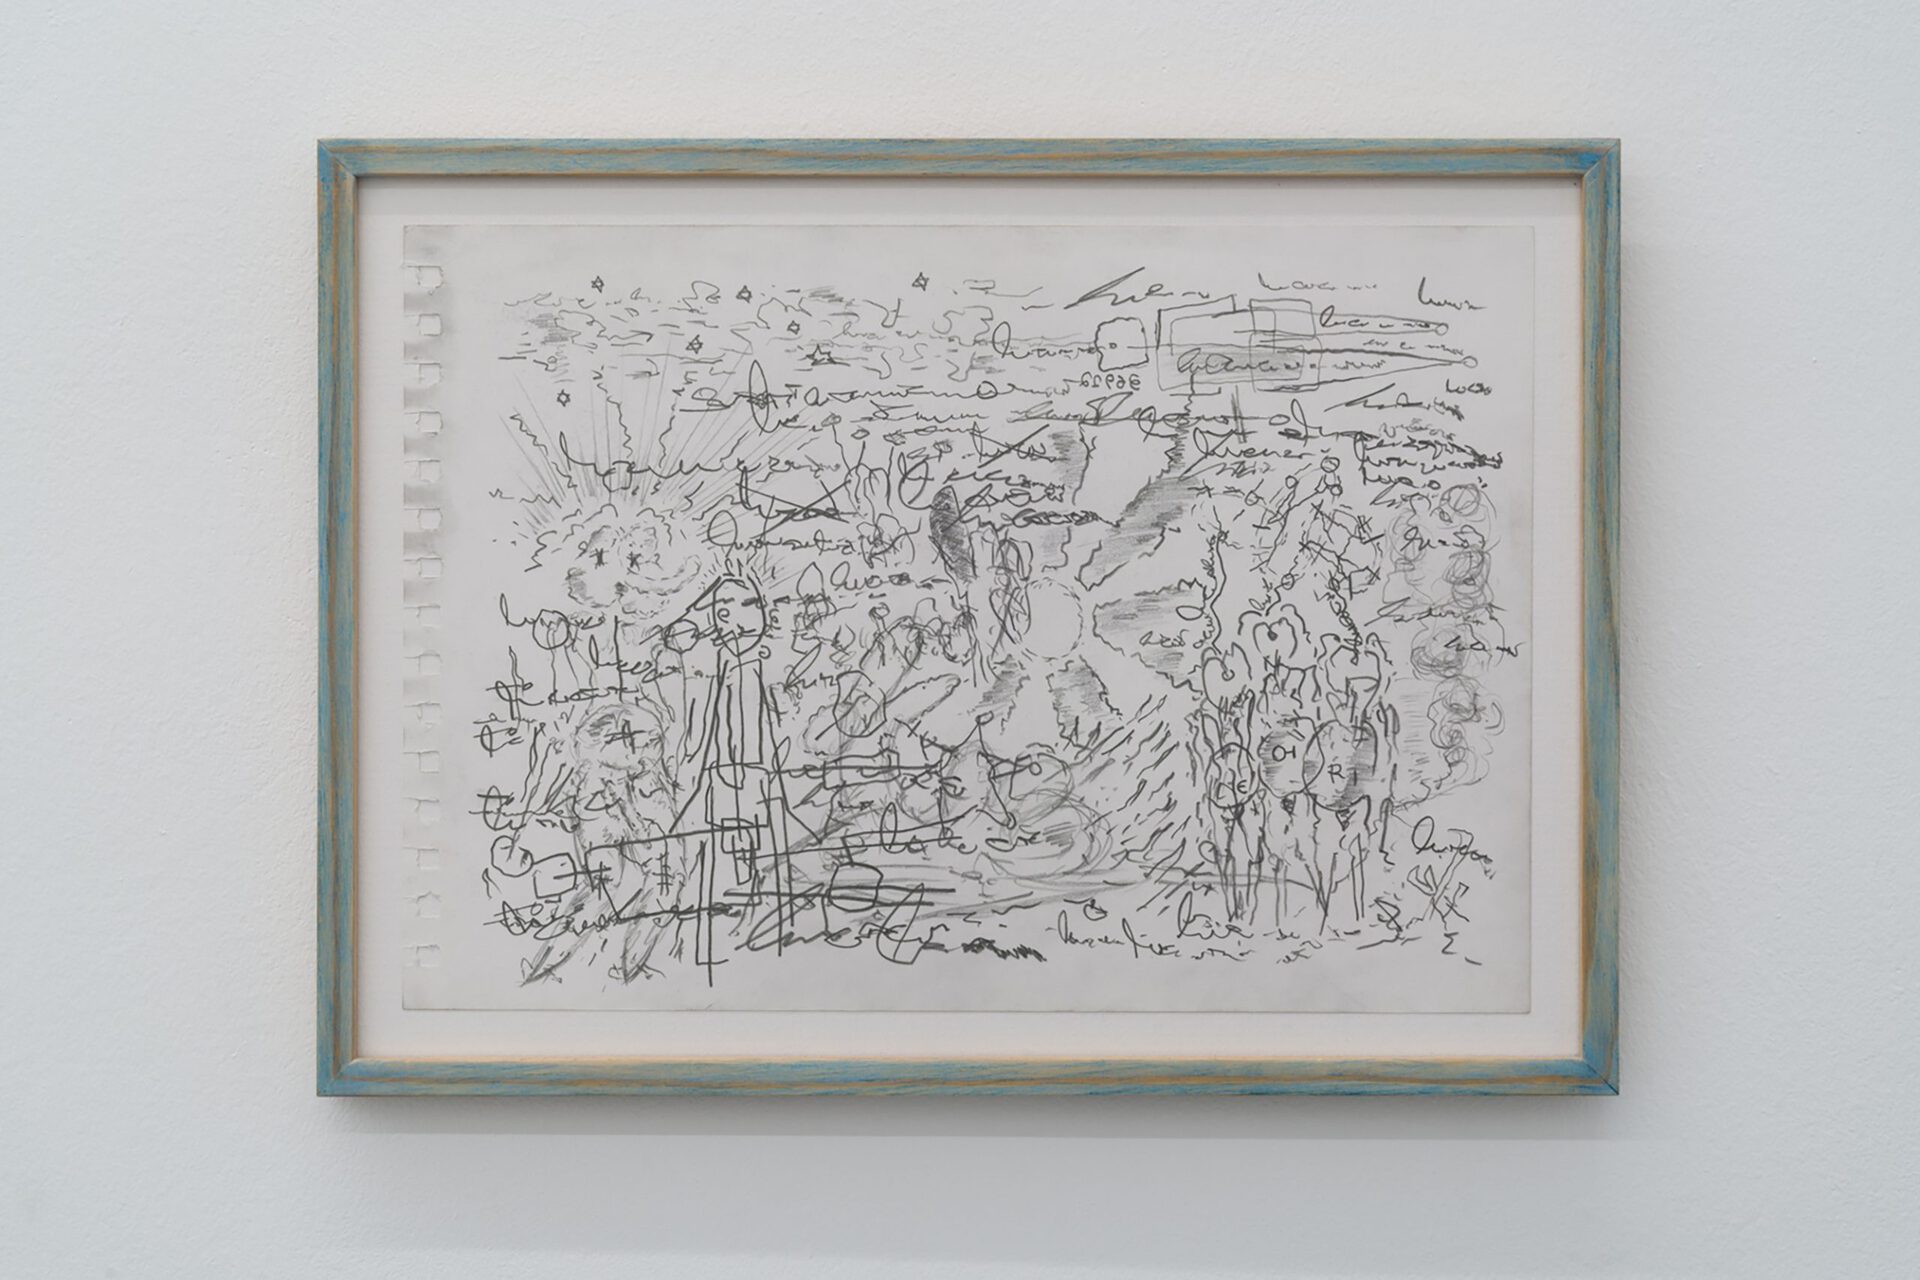 Ilya Smirnov, ‘36912’, 2020, graphite on paper, 295 × 240 mm